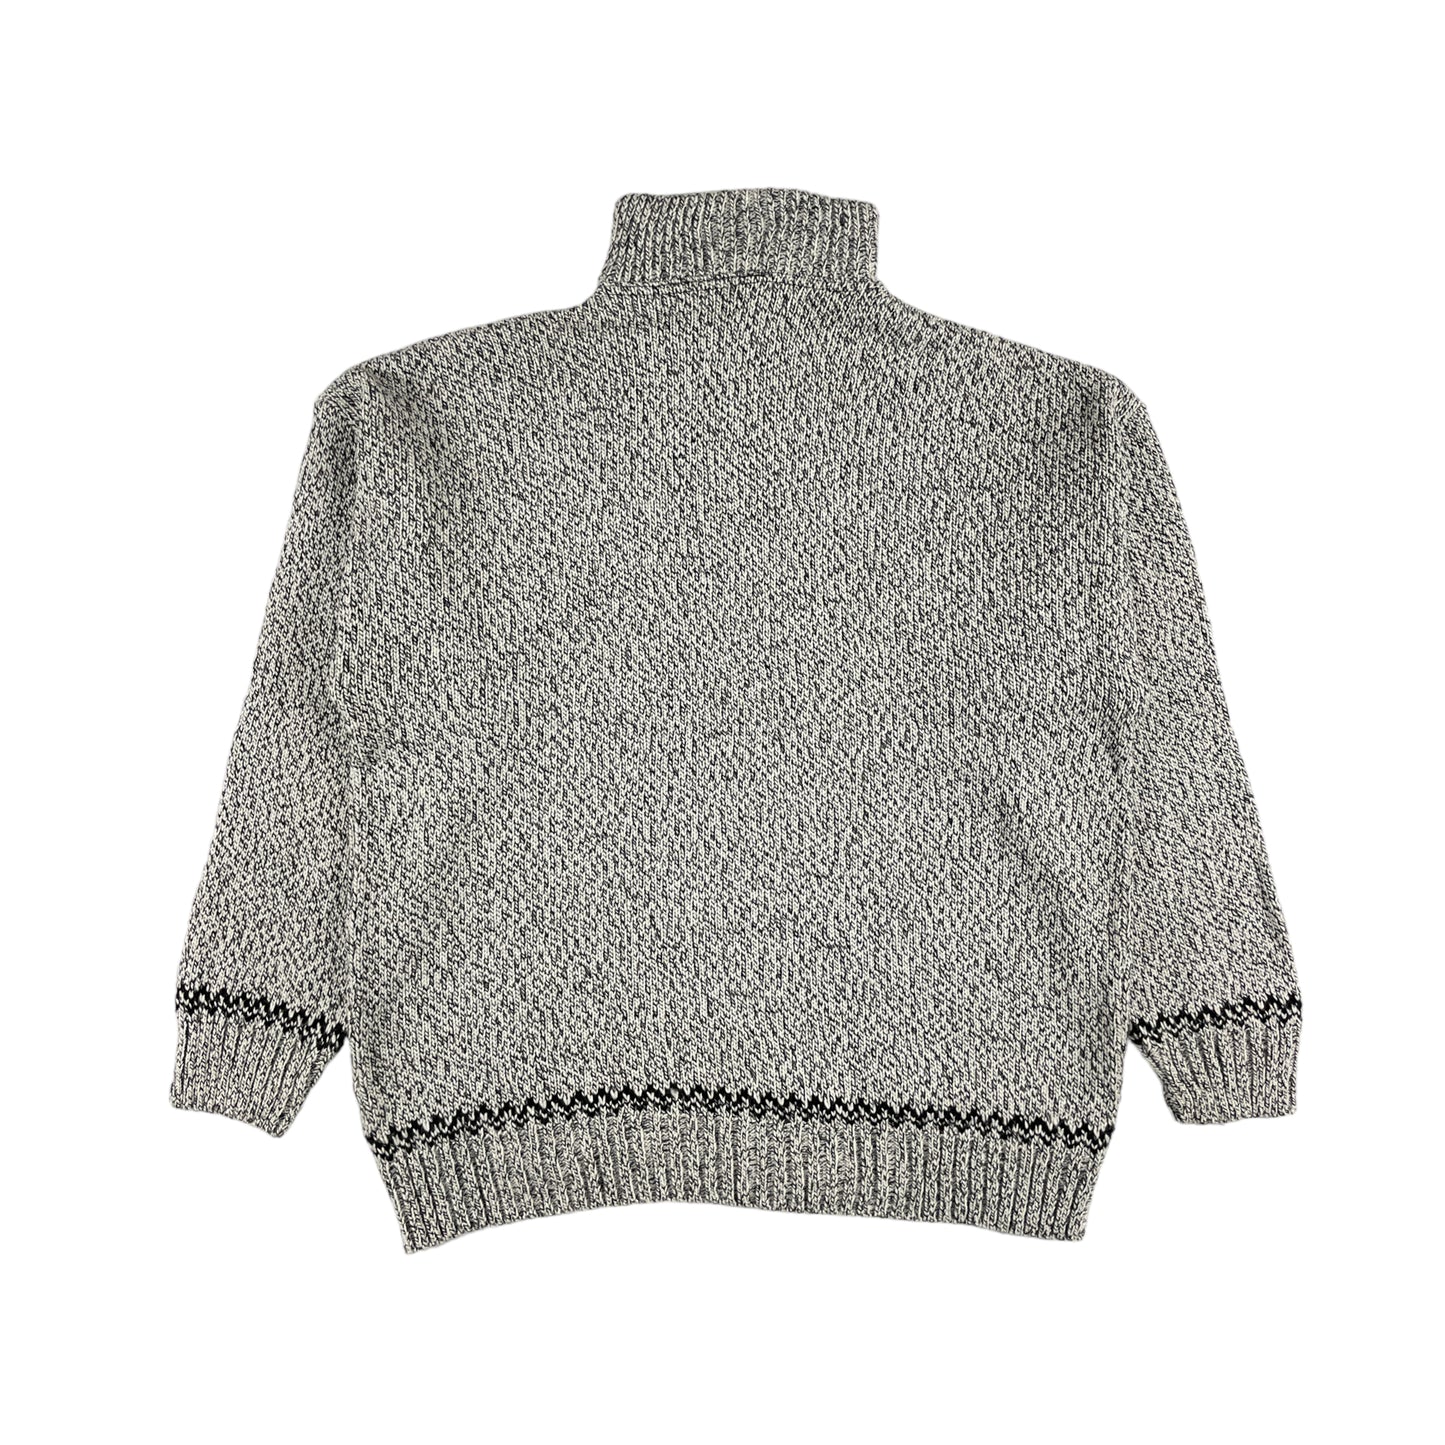 Southern Knit Sweater